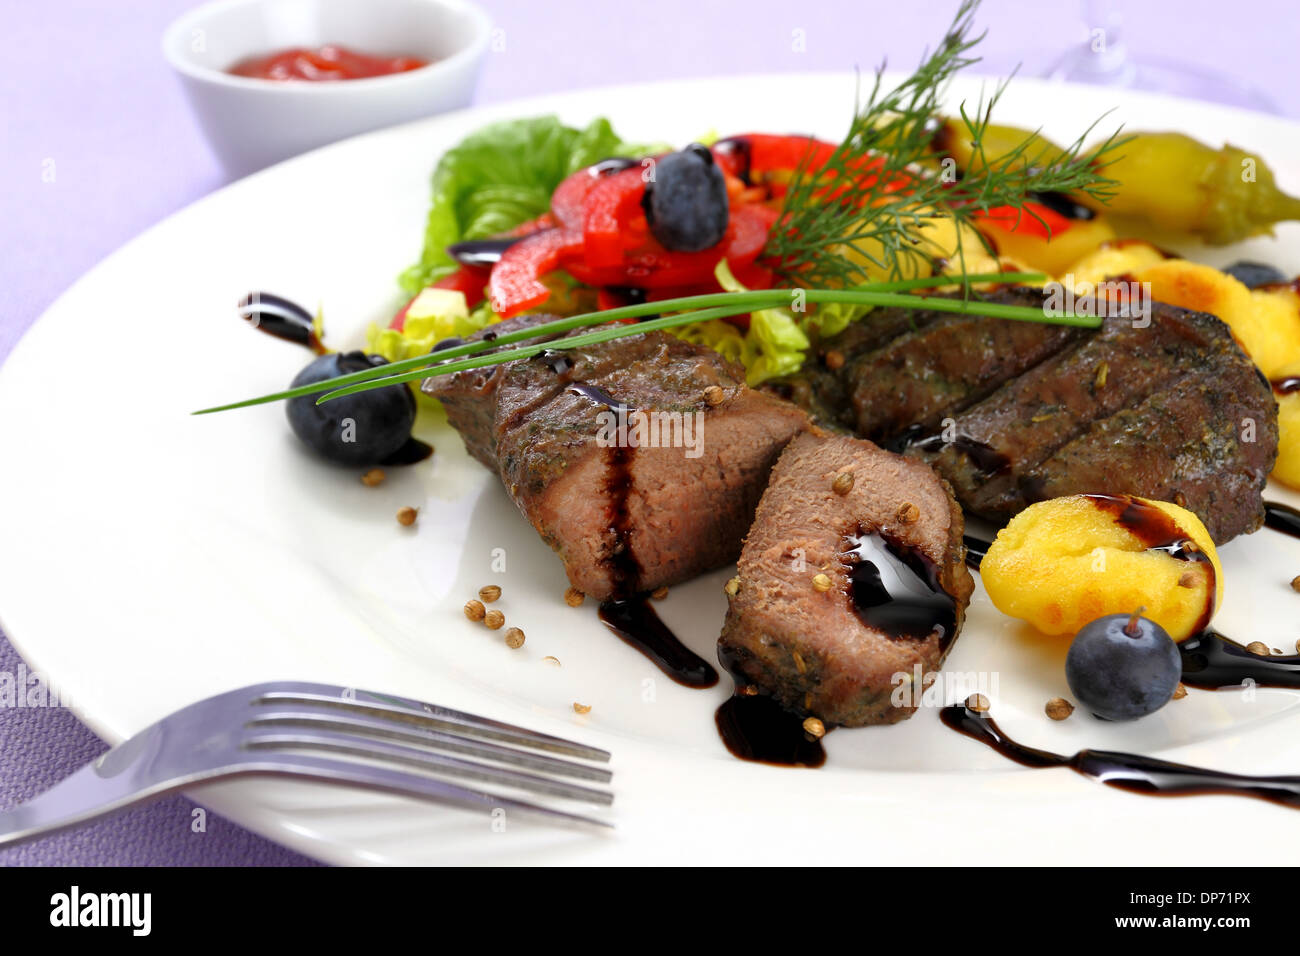 Bistecca di agnello con patate, verdure e salsa balsamica, close up Foto Stock